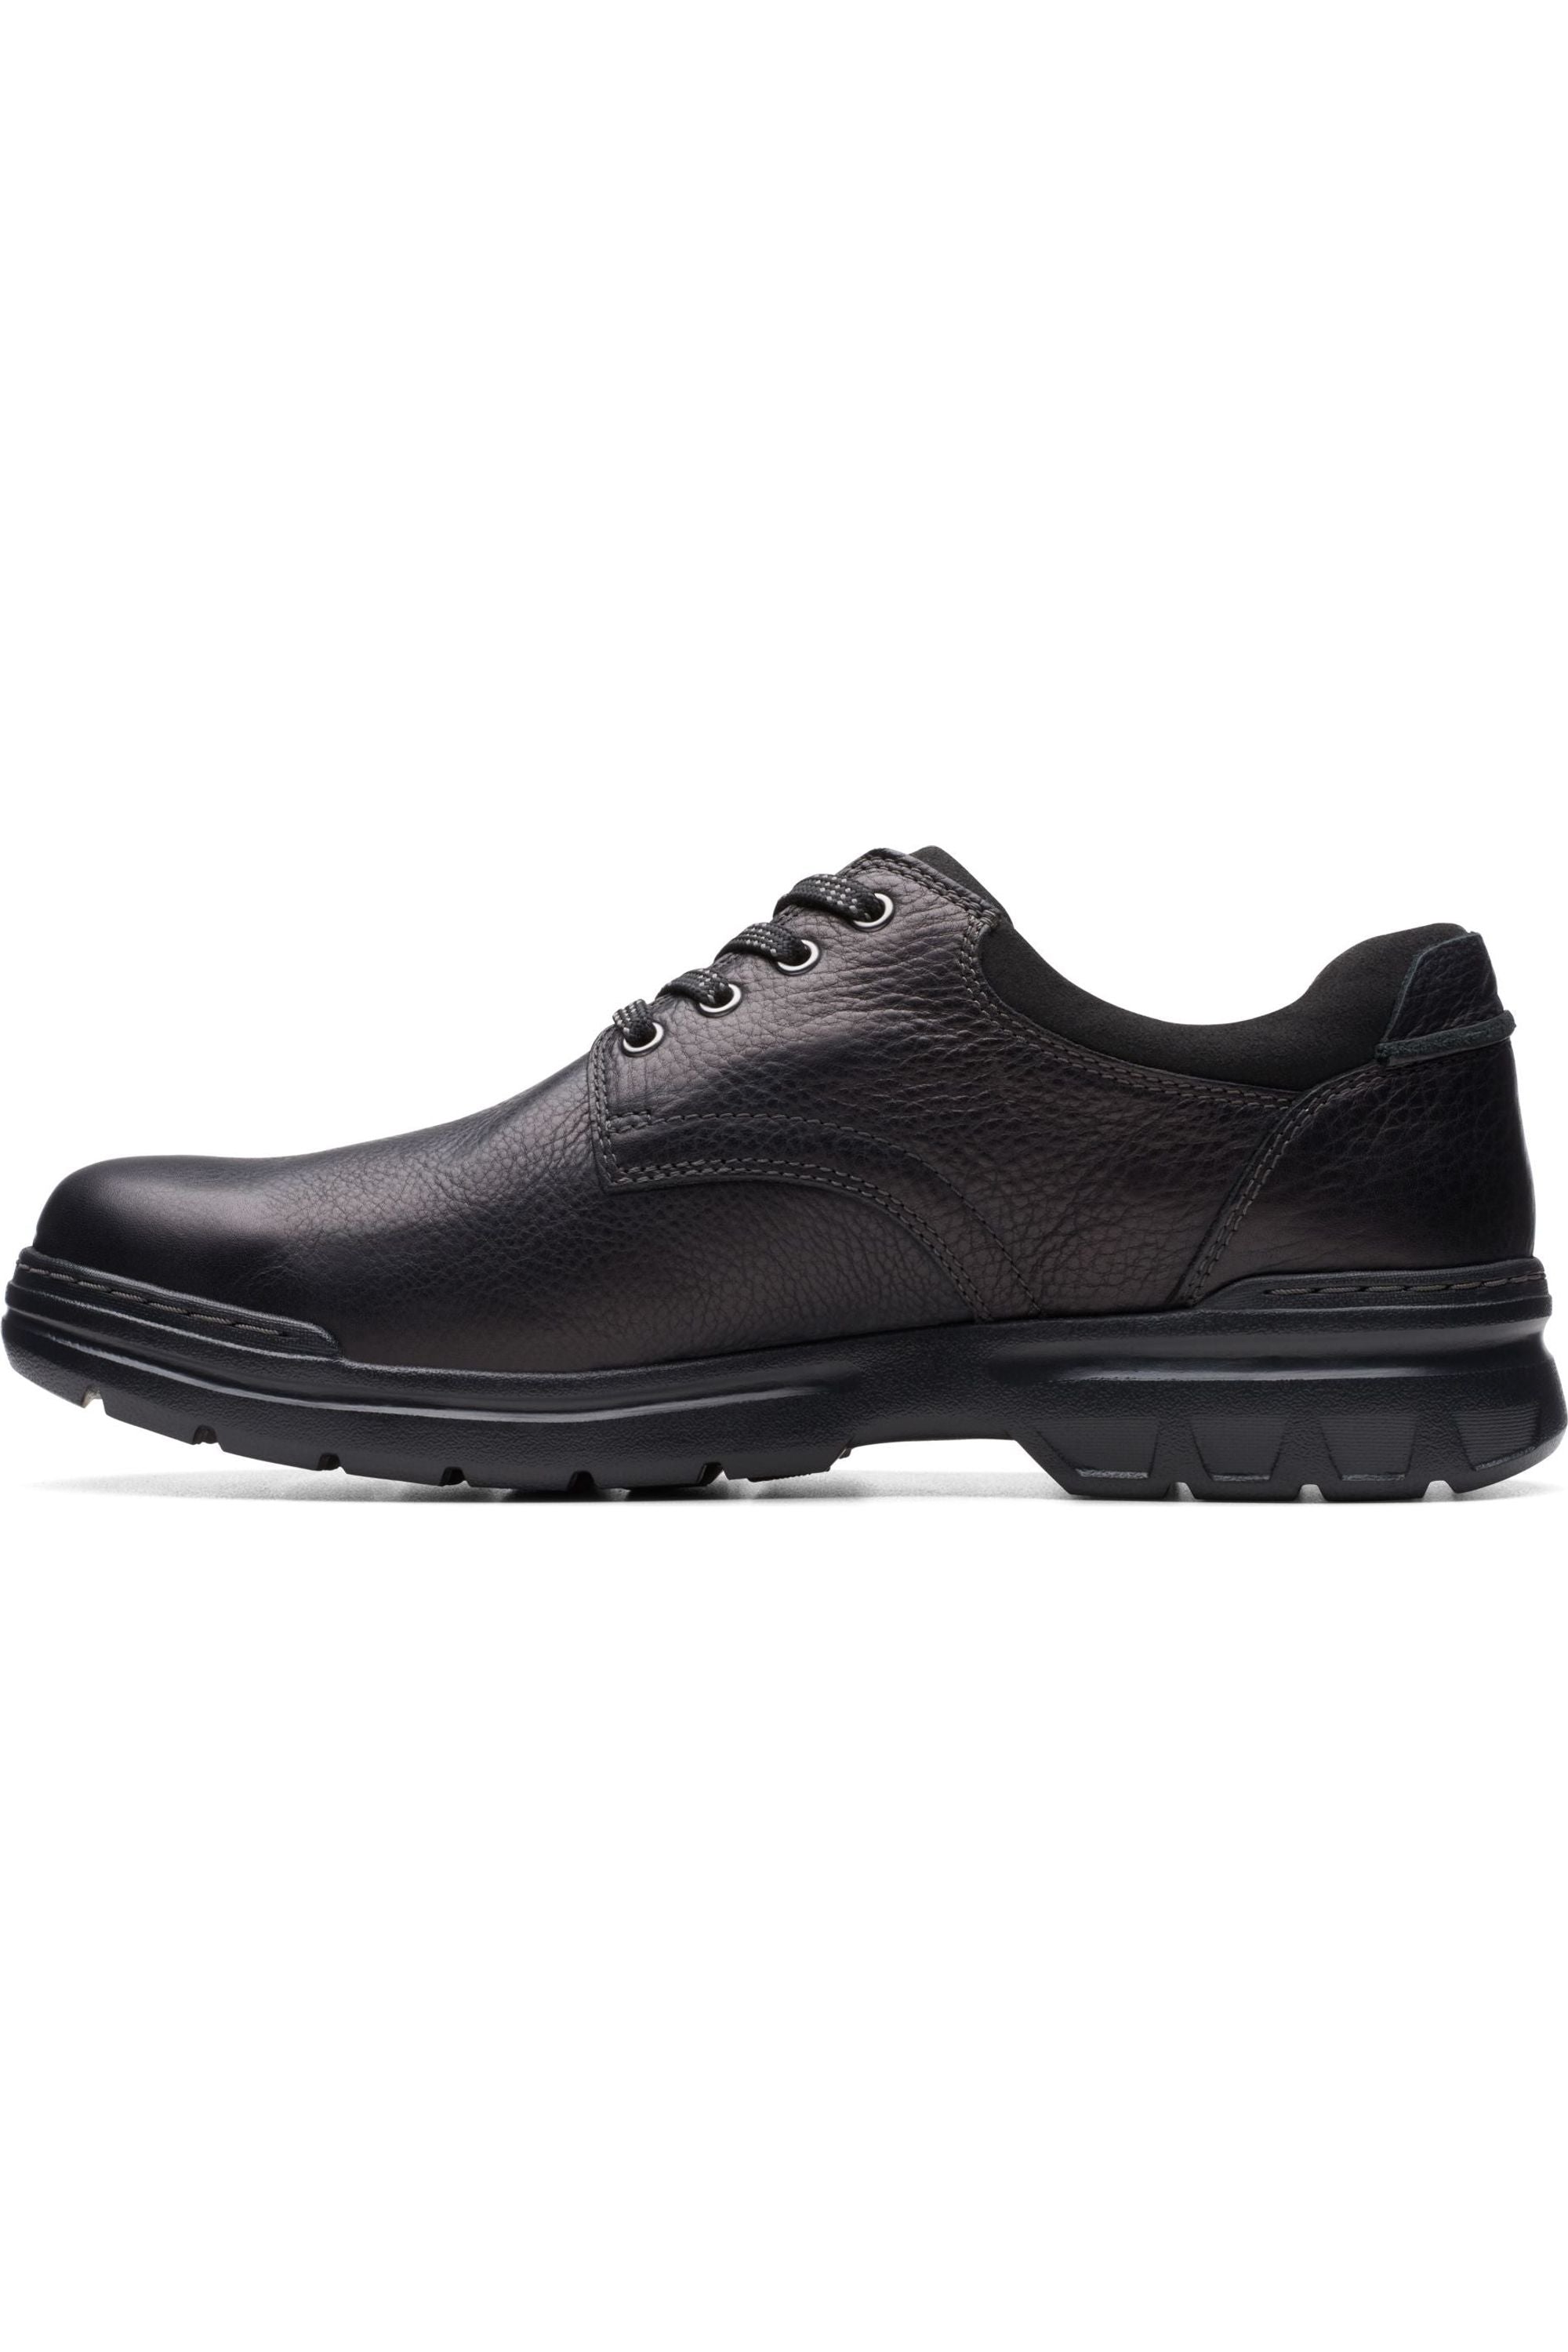 Clarks Rockie WalkGTX waterproof shoe in black leather